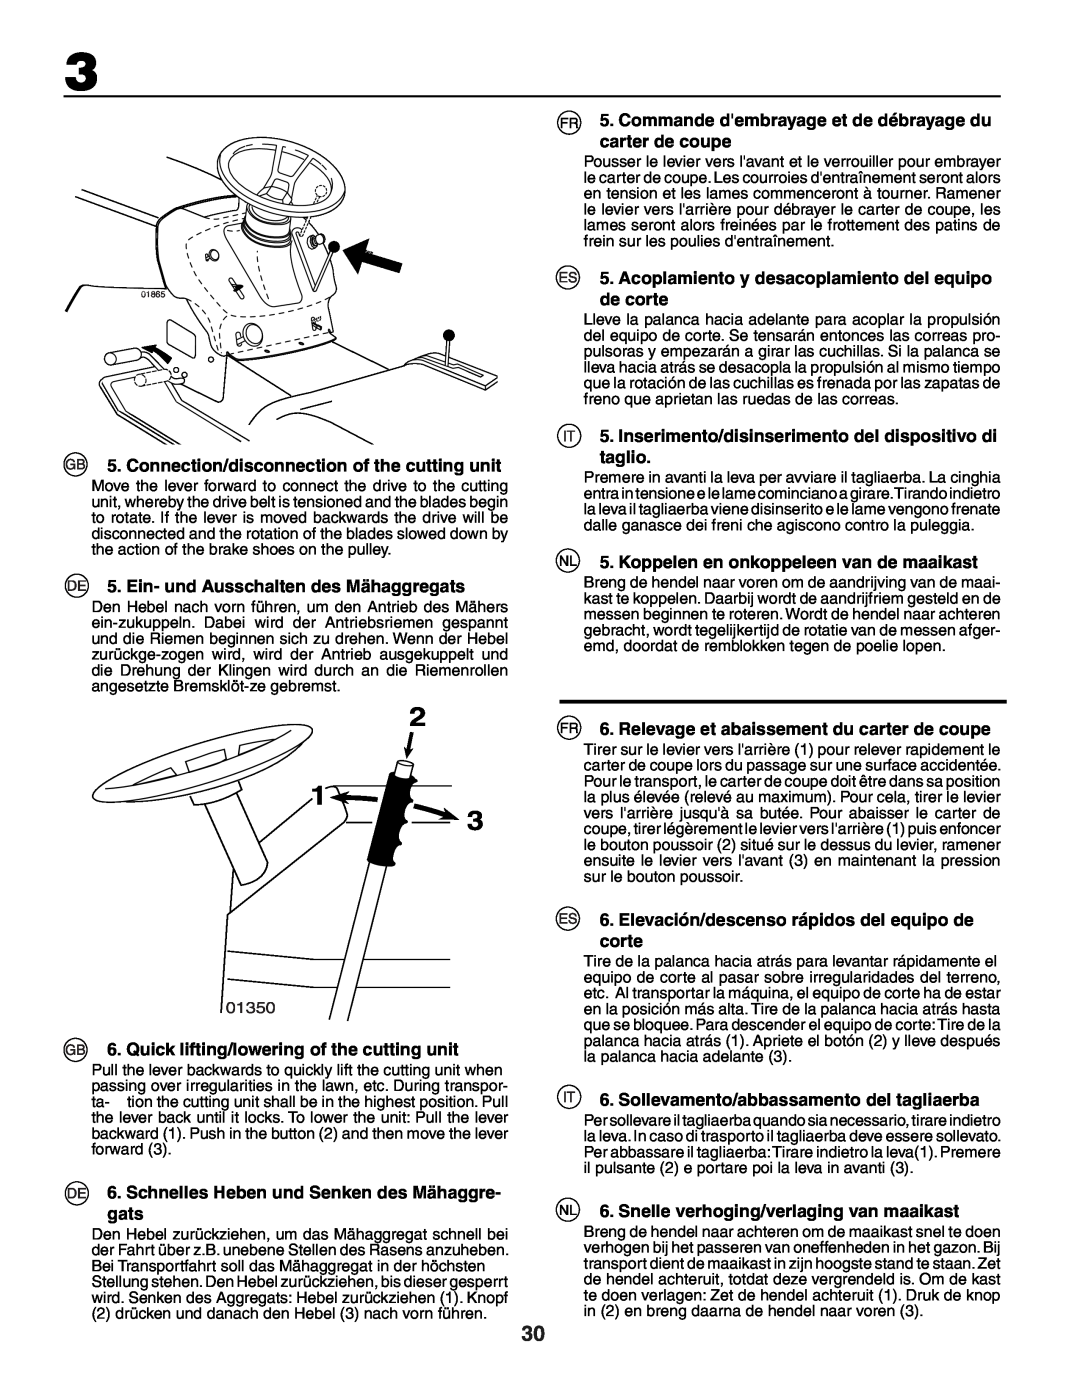 Husqvarna YTH150XP instruction manual Connection/disconnection of the cutting unit, Ein- und Ausschalten des Mähaggregats 